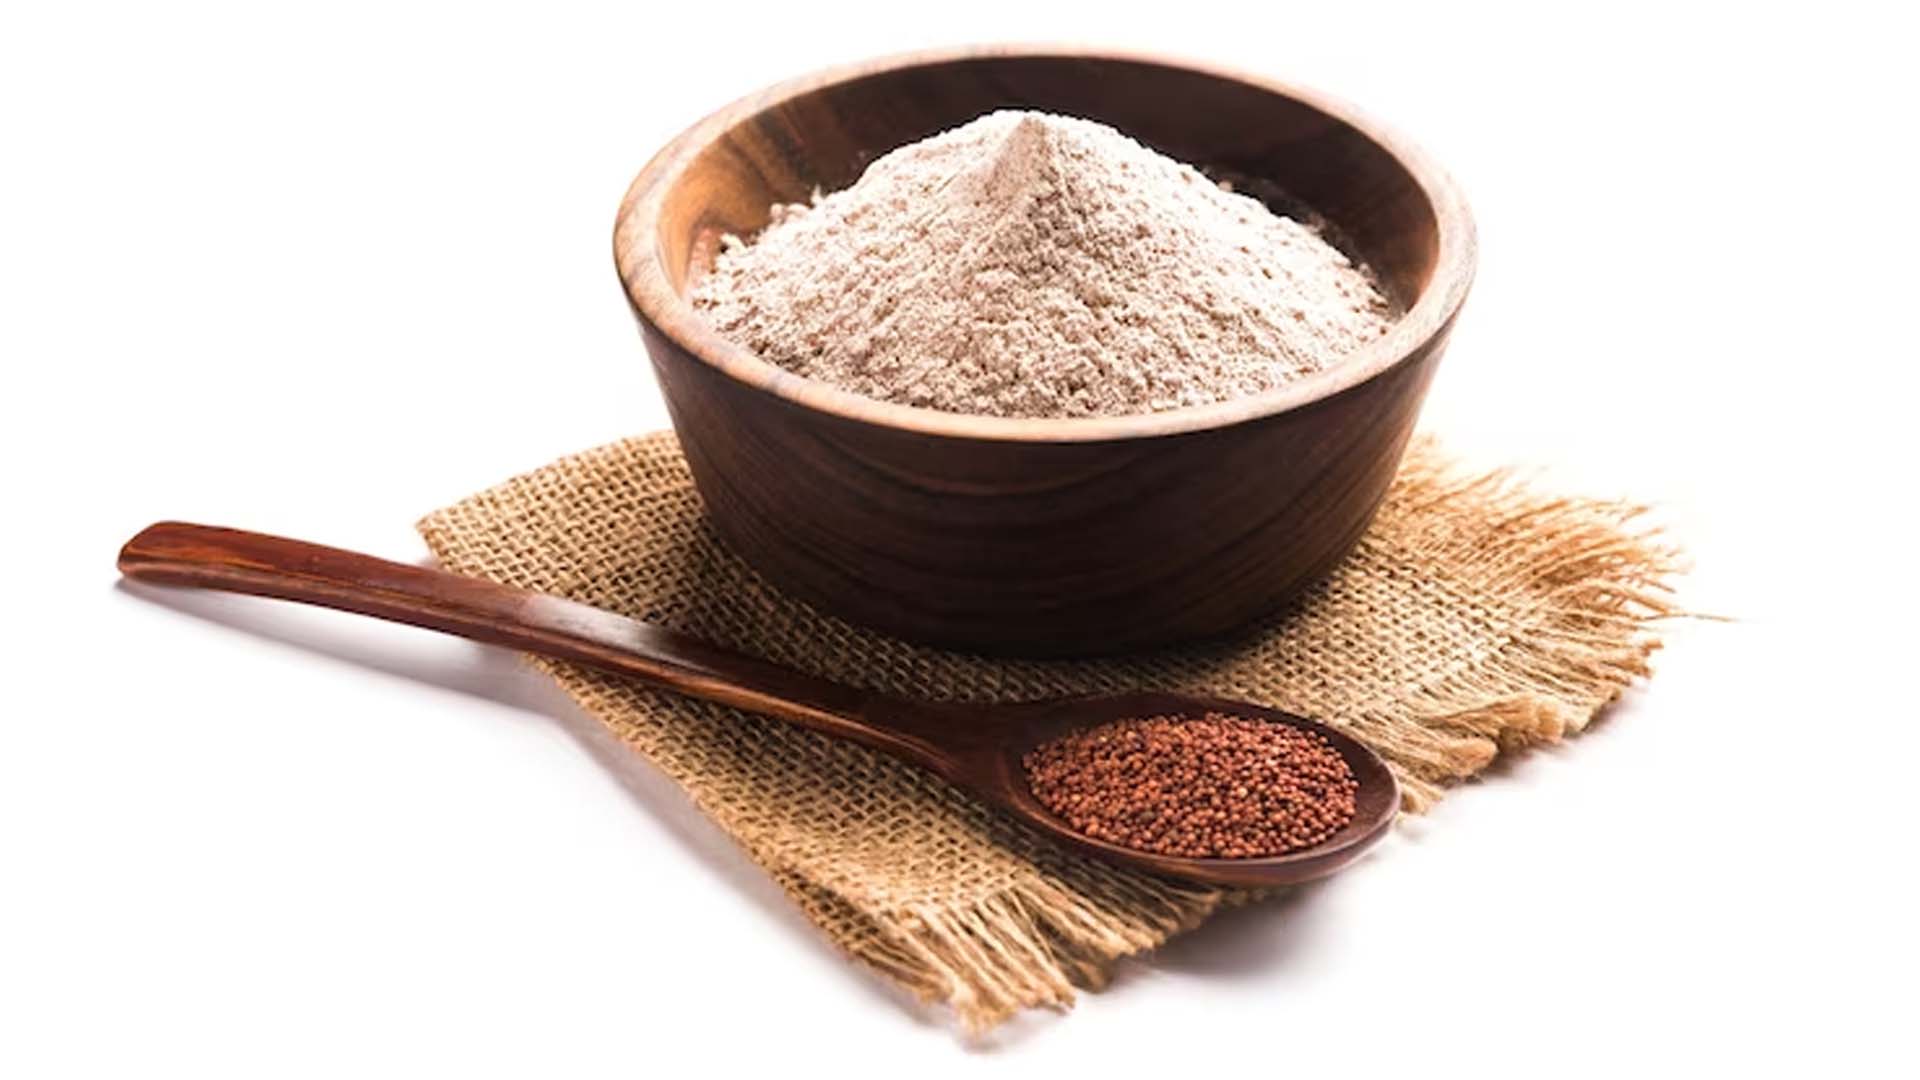 Nutritional value of ragi flour